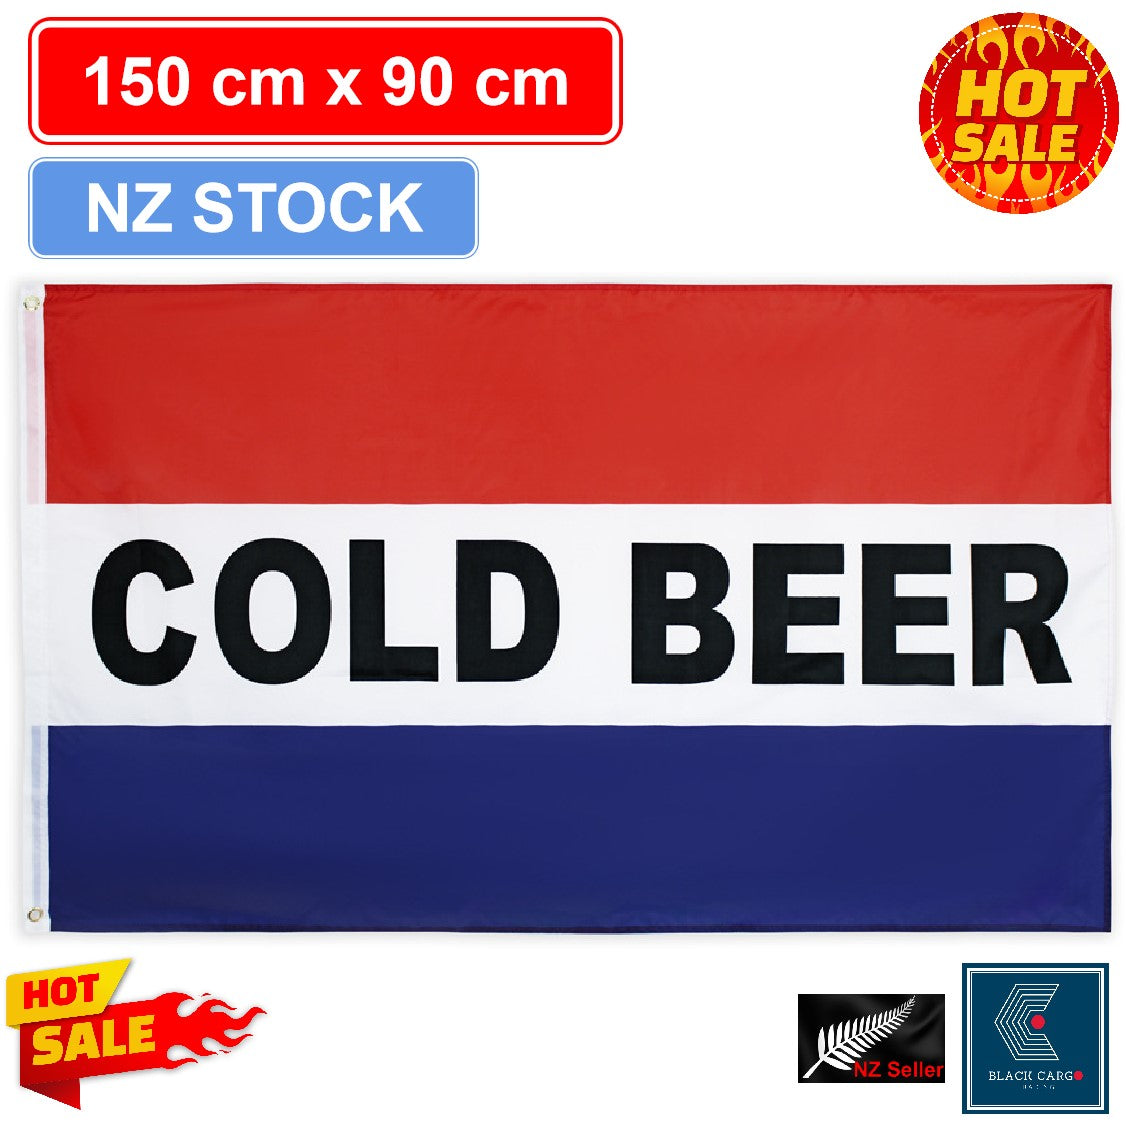 Cold Beer Flag Business Flag - Referdeal